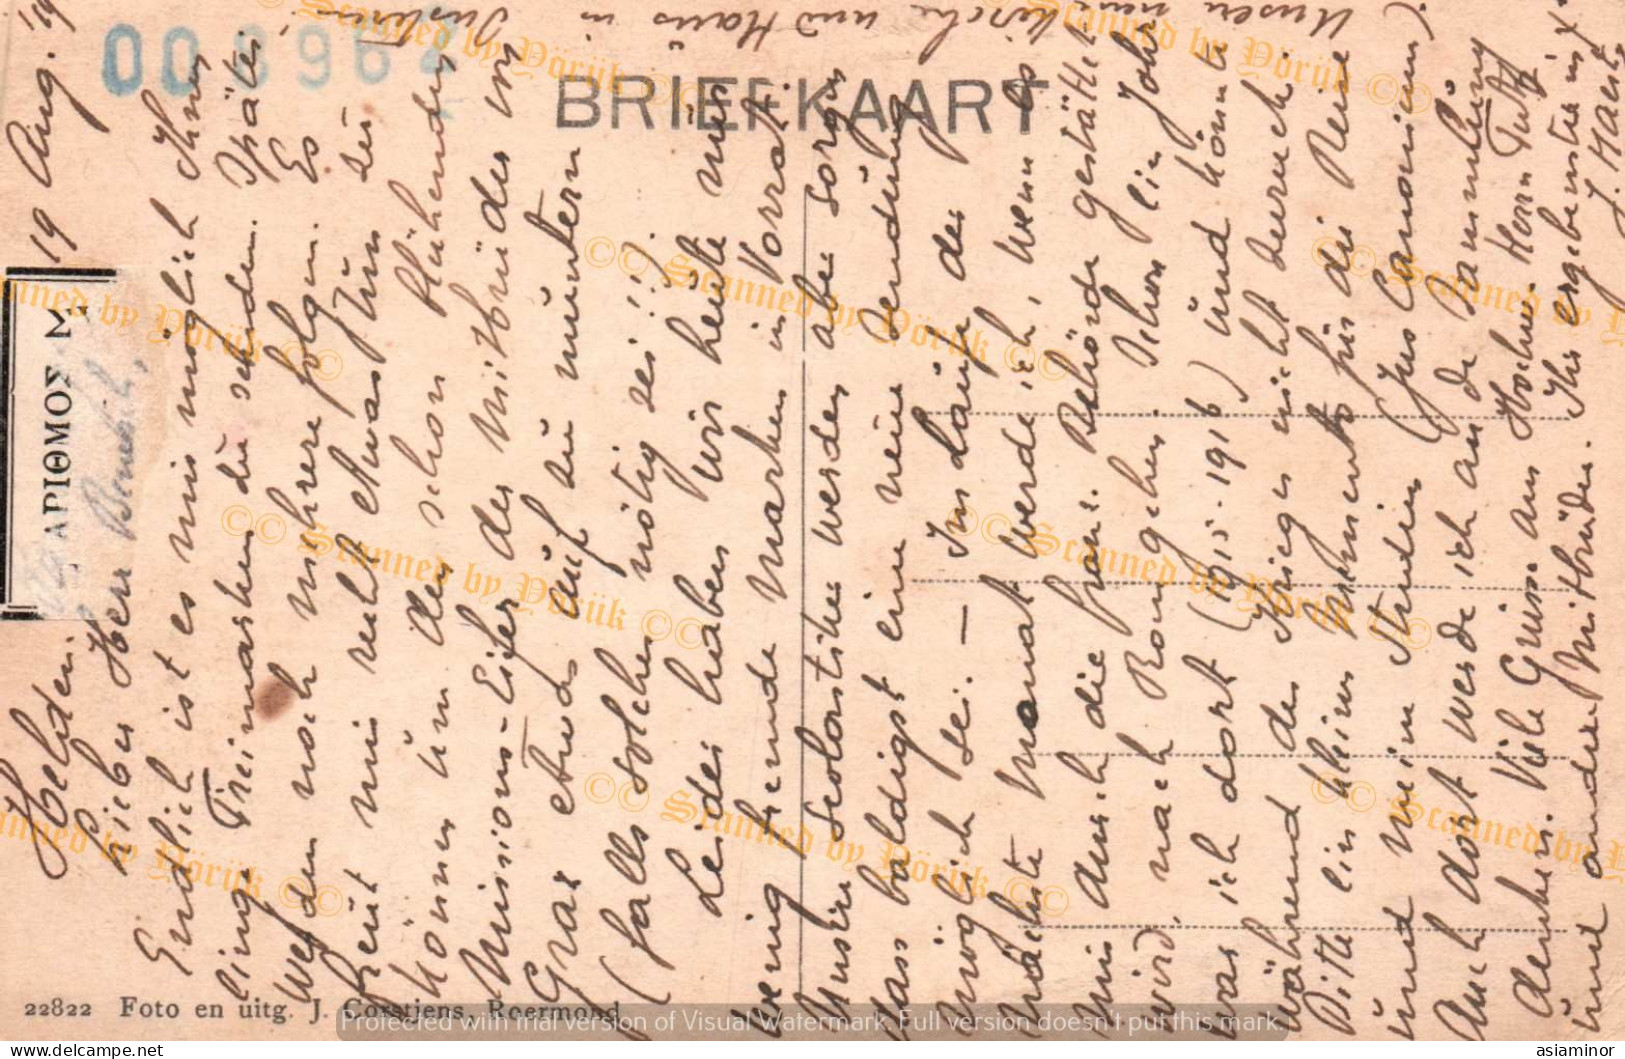 Postcard - 1900/20 - 9x14 Cm. | Mariaveld, Priesters - Vincentianen, Susteren (Limburg) - Hoogstraten